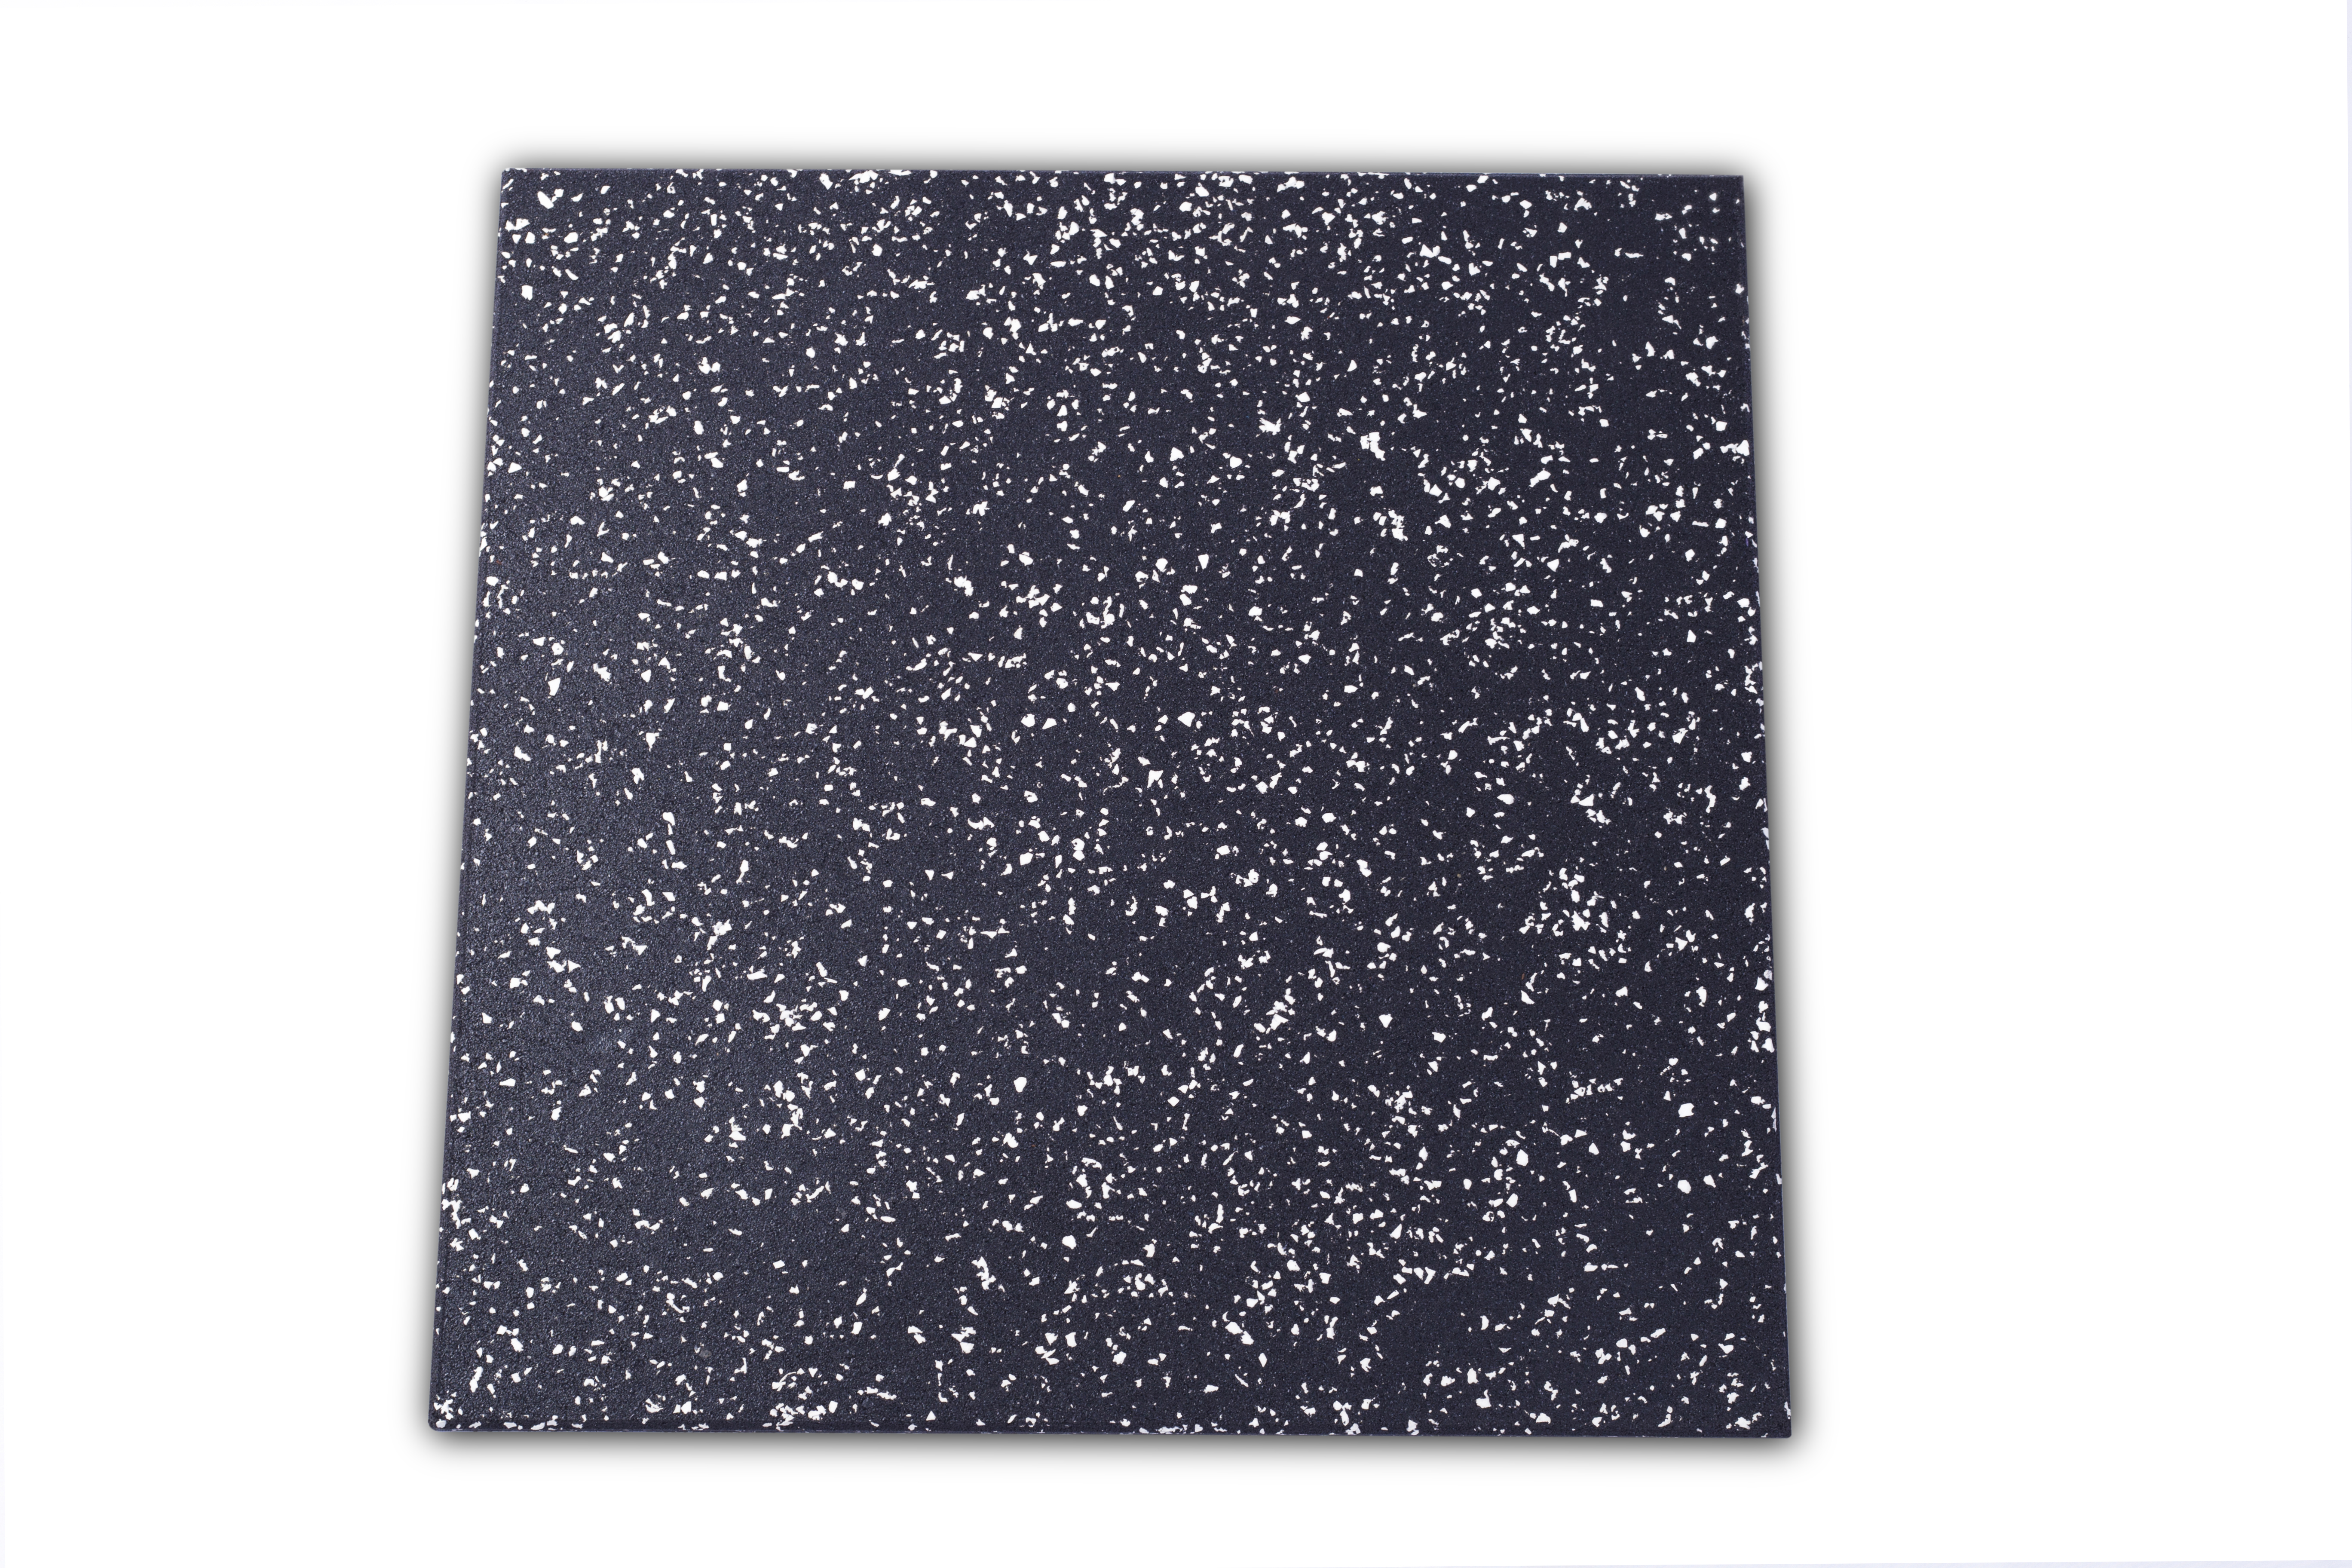 Durable Black Color Epdm Composite Gym Rubber Flooring